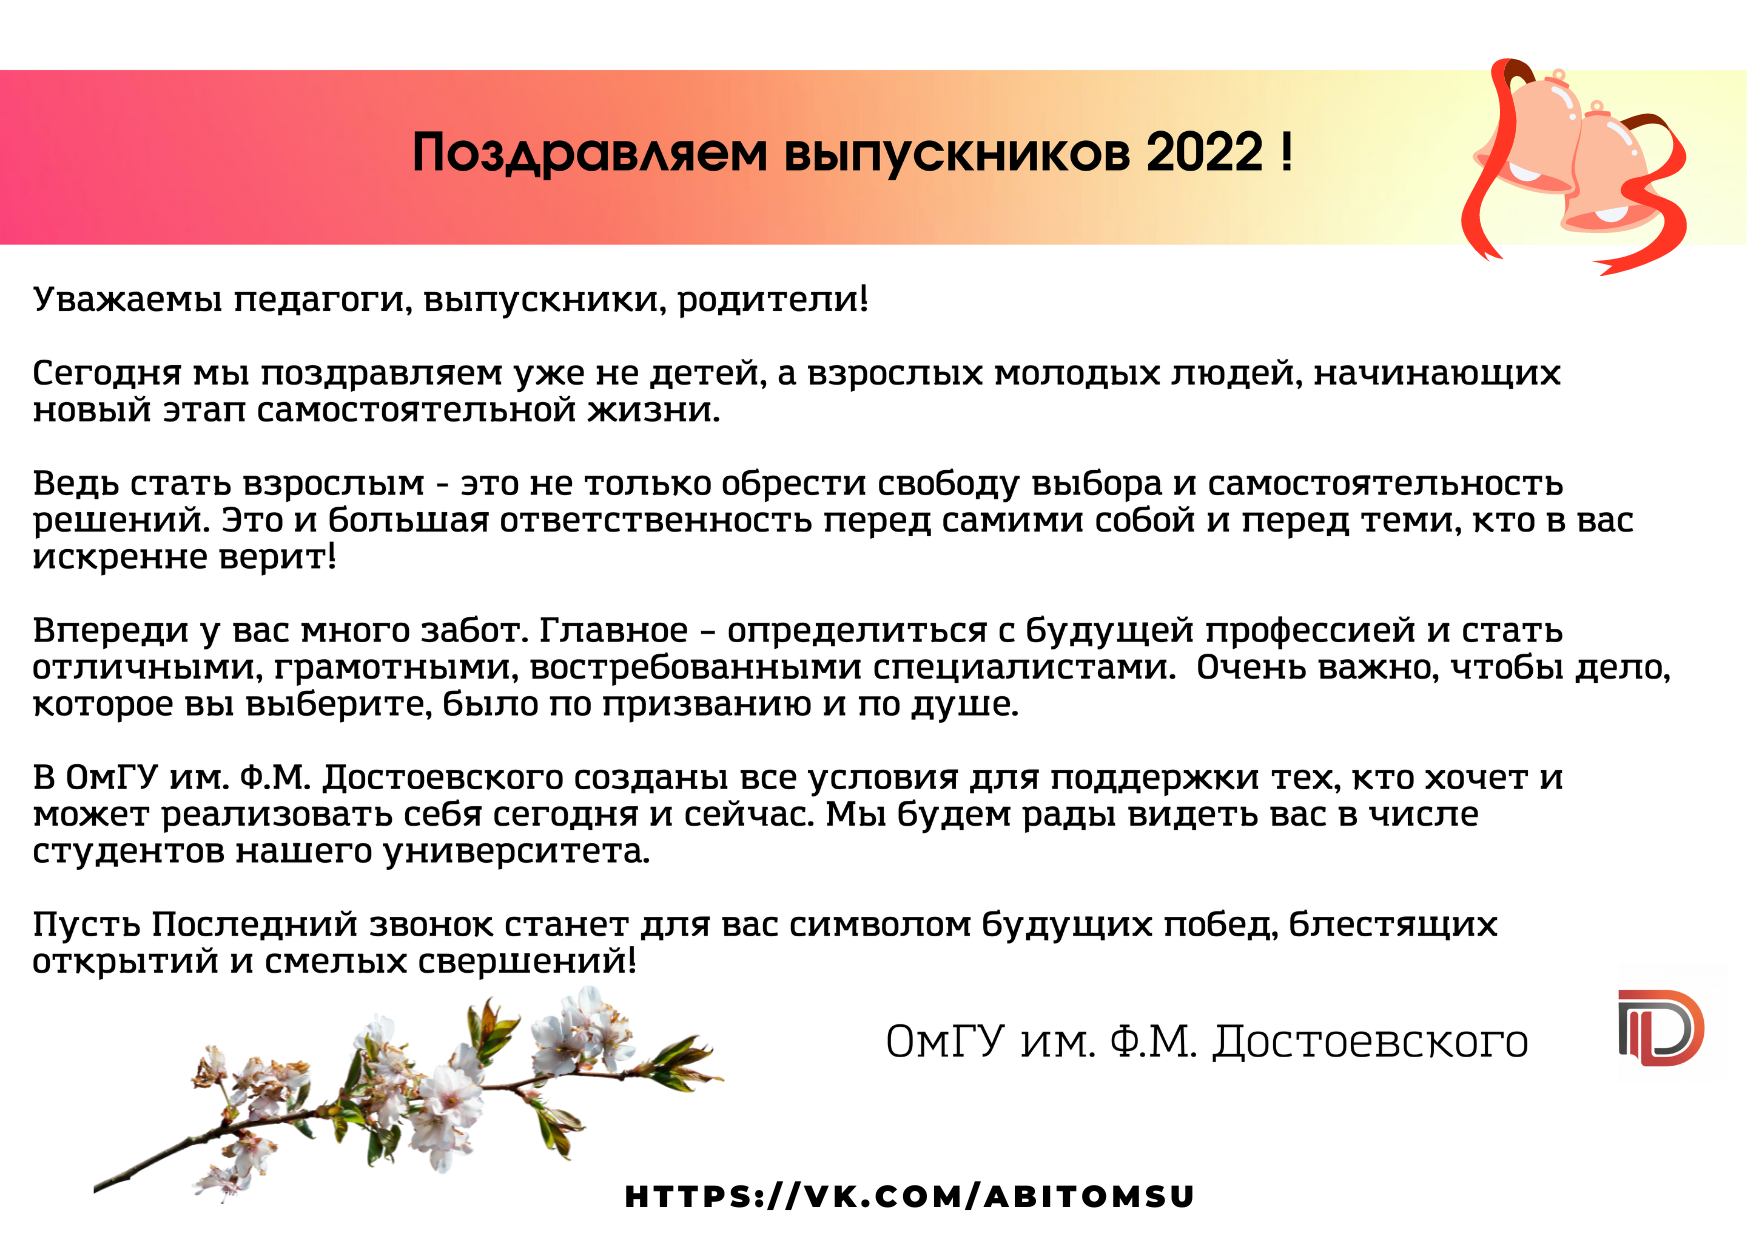 Поздравительная открытка выпускников 2022 года от ОмГУ им. Ф.М. Достоевского